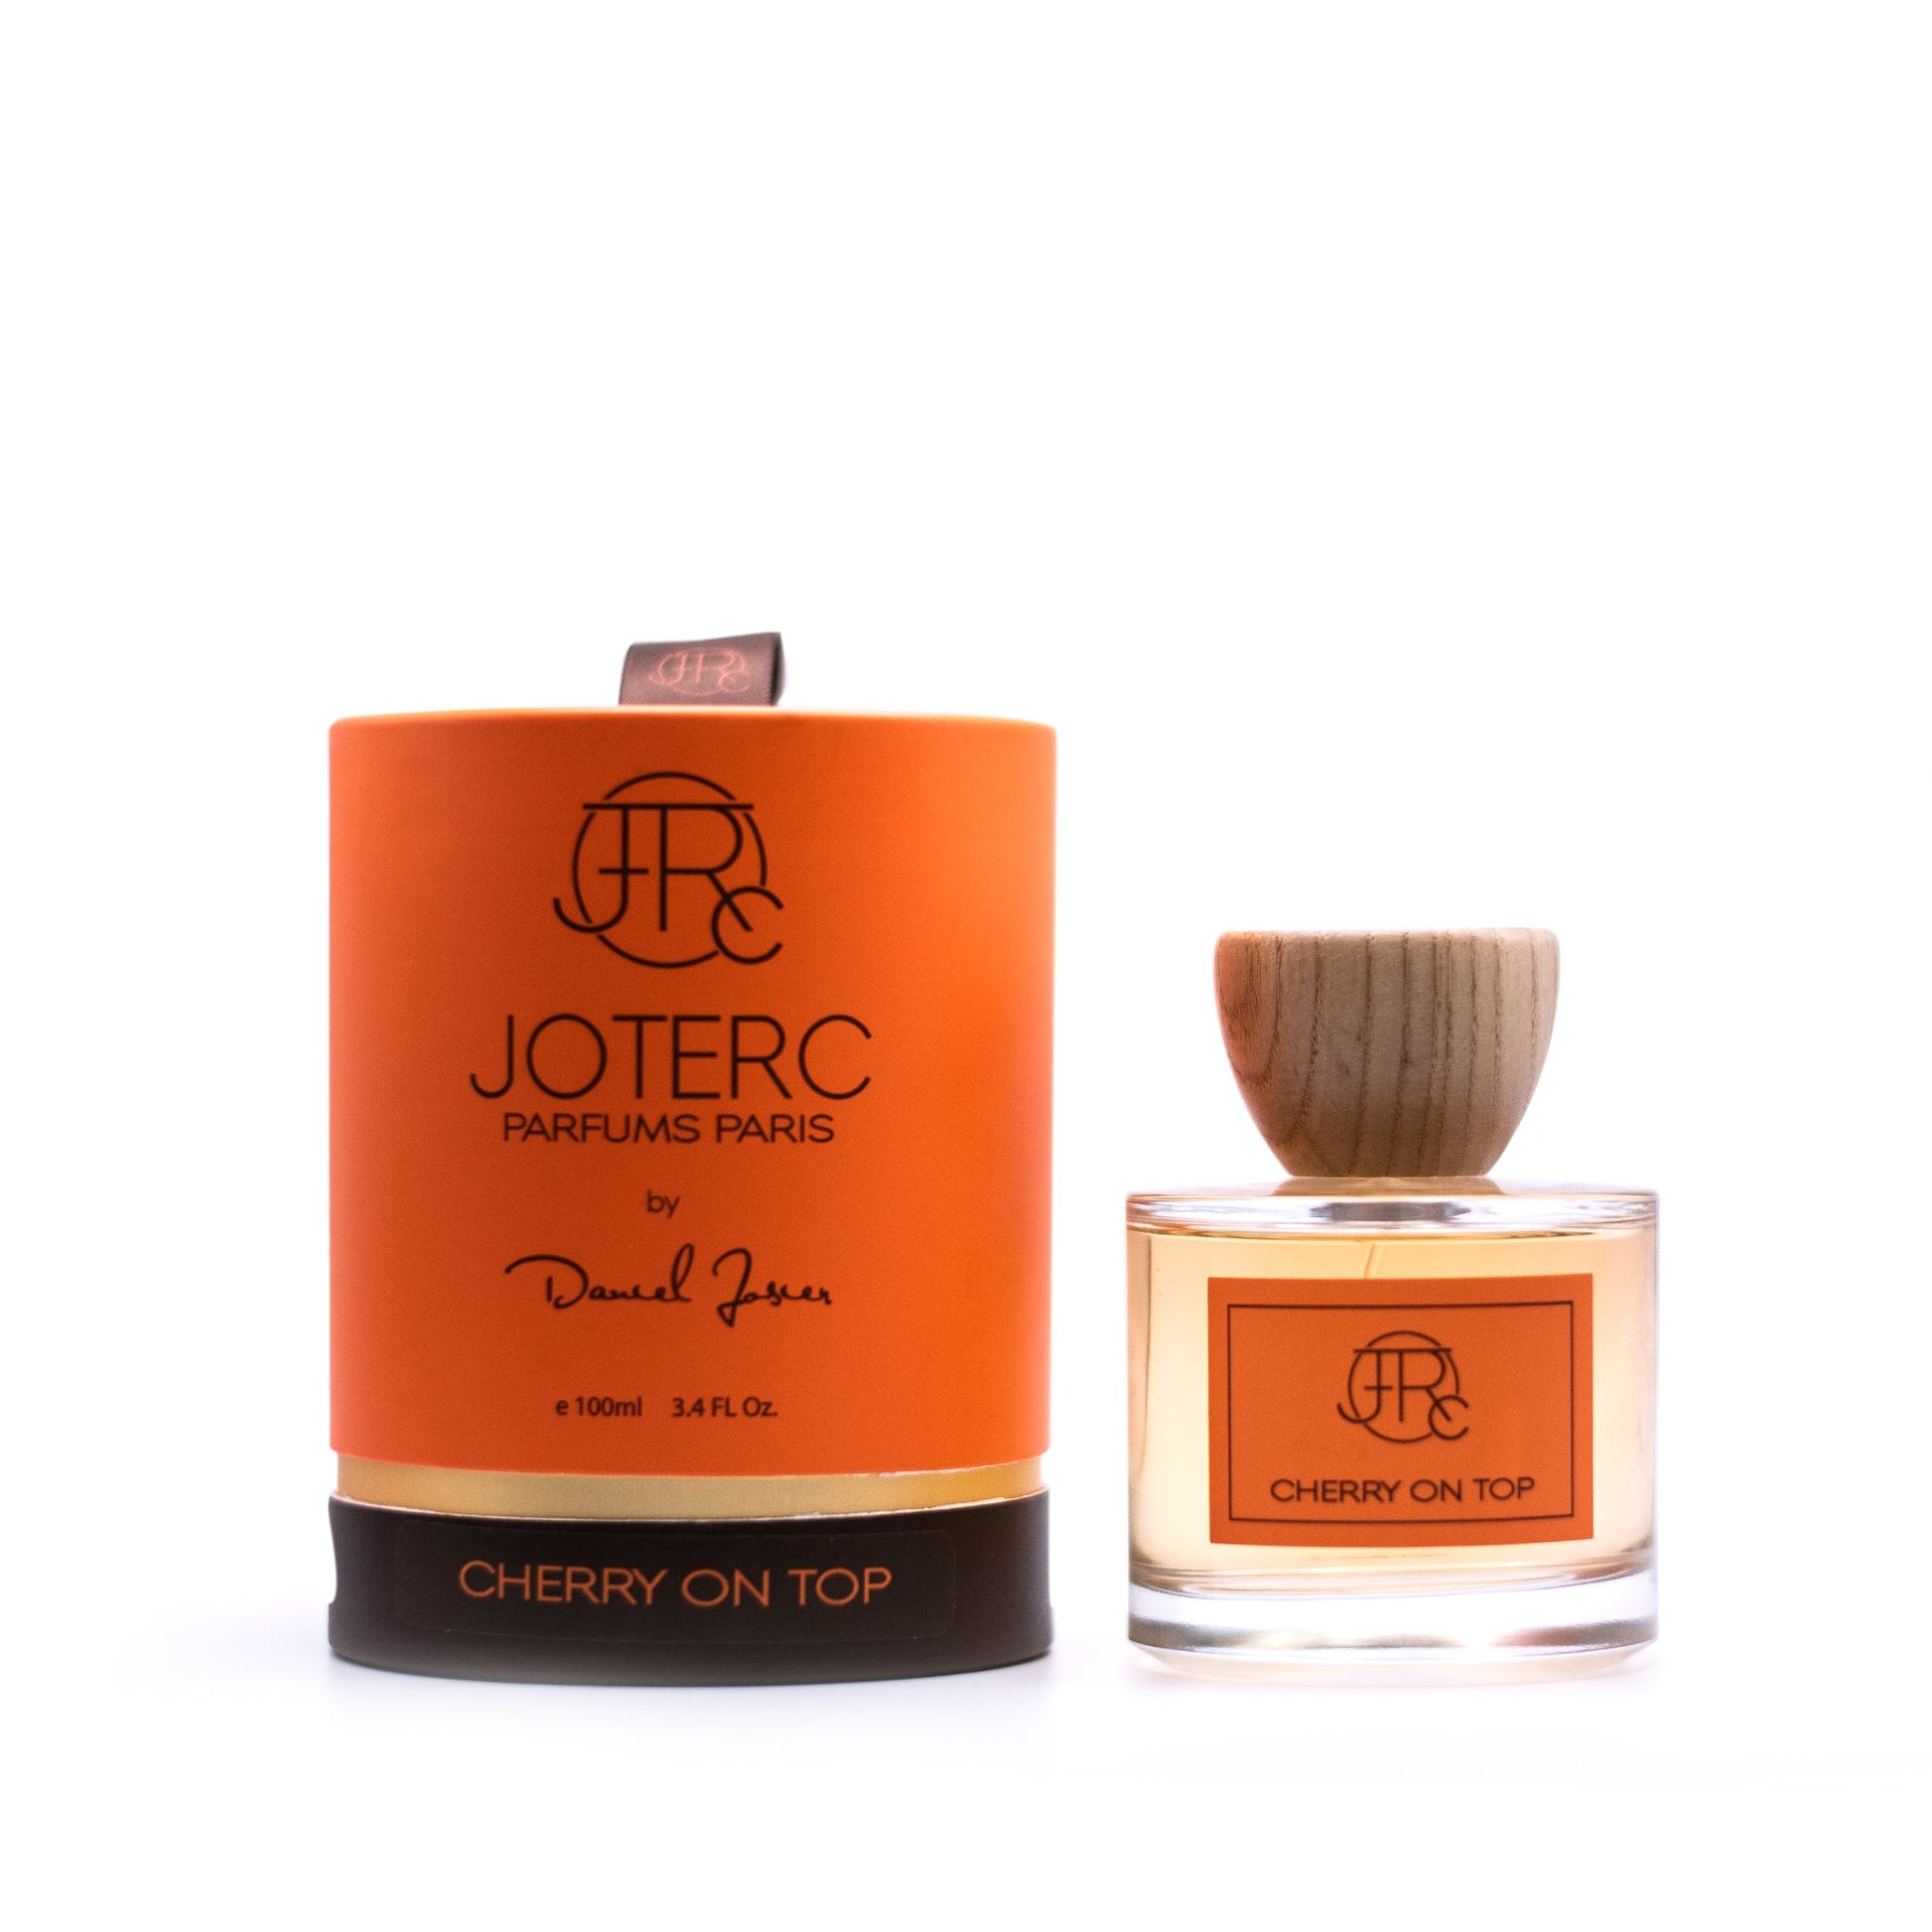 Joterc Cherry On Top Eau de Parfum Spray for Women and Men by Daniel Josier, Product image 1